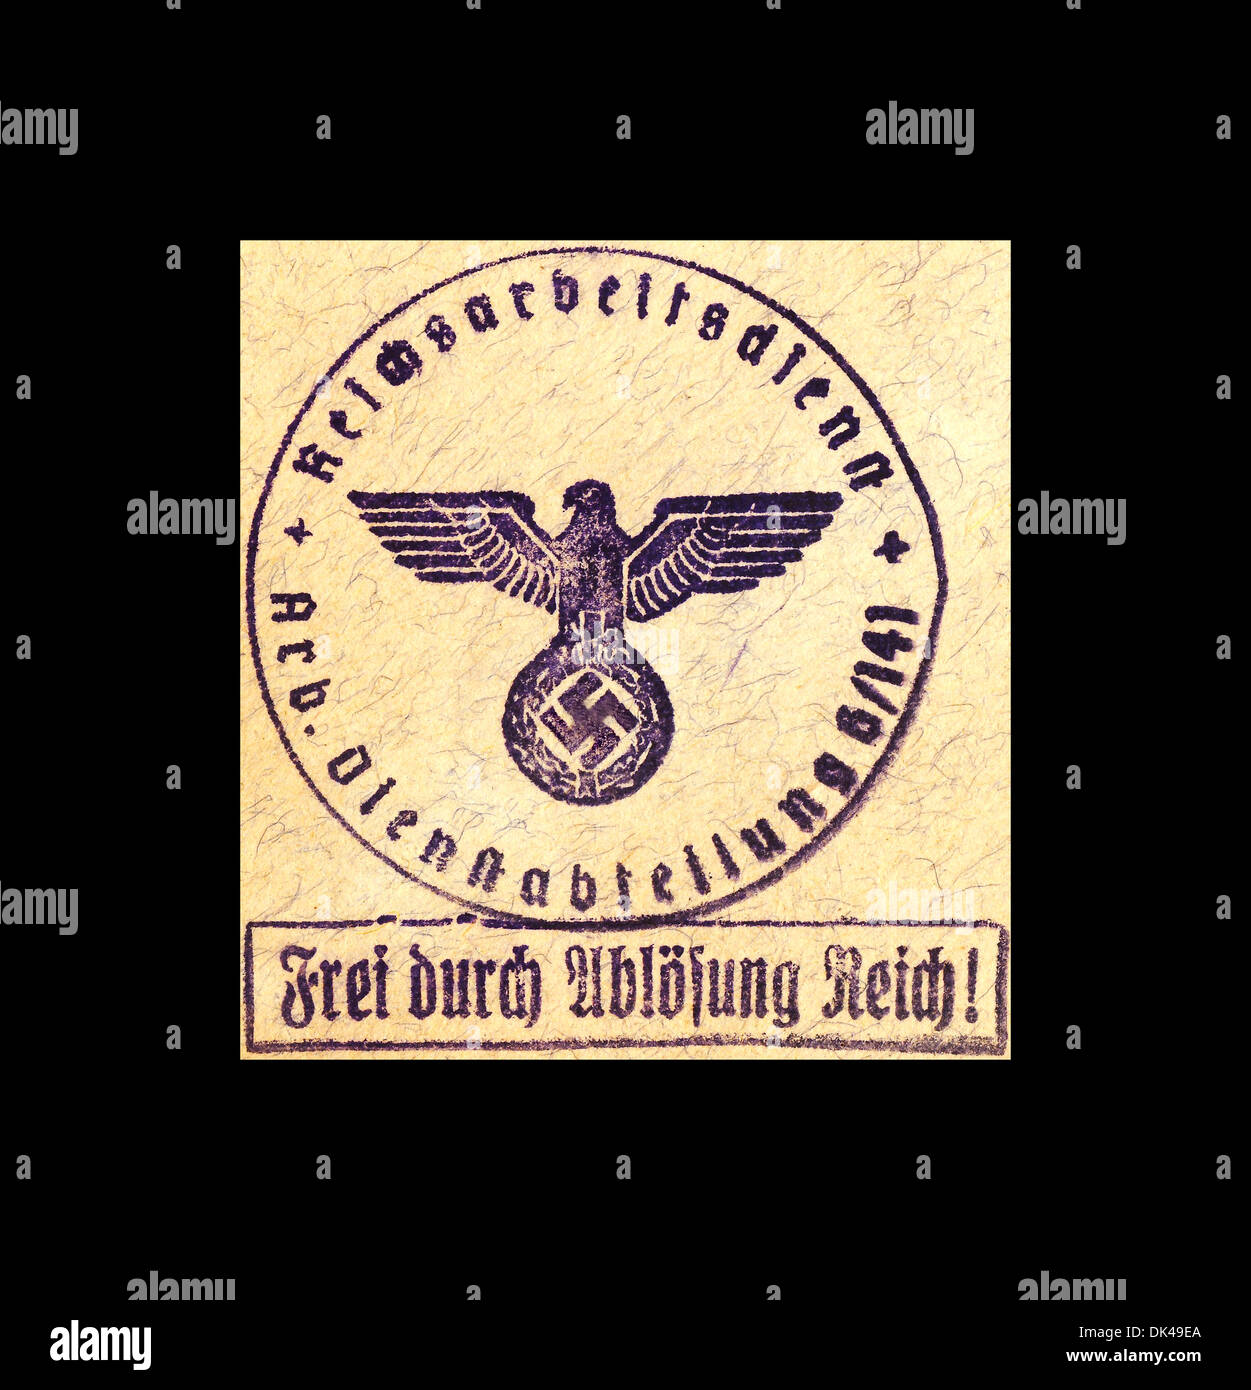 1941 WW2 Partido Nazi Oficial de los trabajadores sello y símbolo de la esvástica 'Frei durch ablösung Reich' 'Libre a través de la redención del Reich' Alemania Segunda Guerra Mundial 2F9G3 Foto de stock